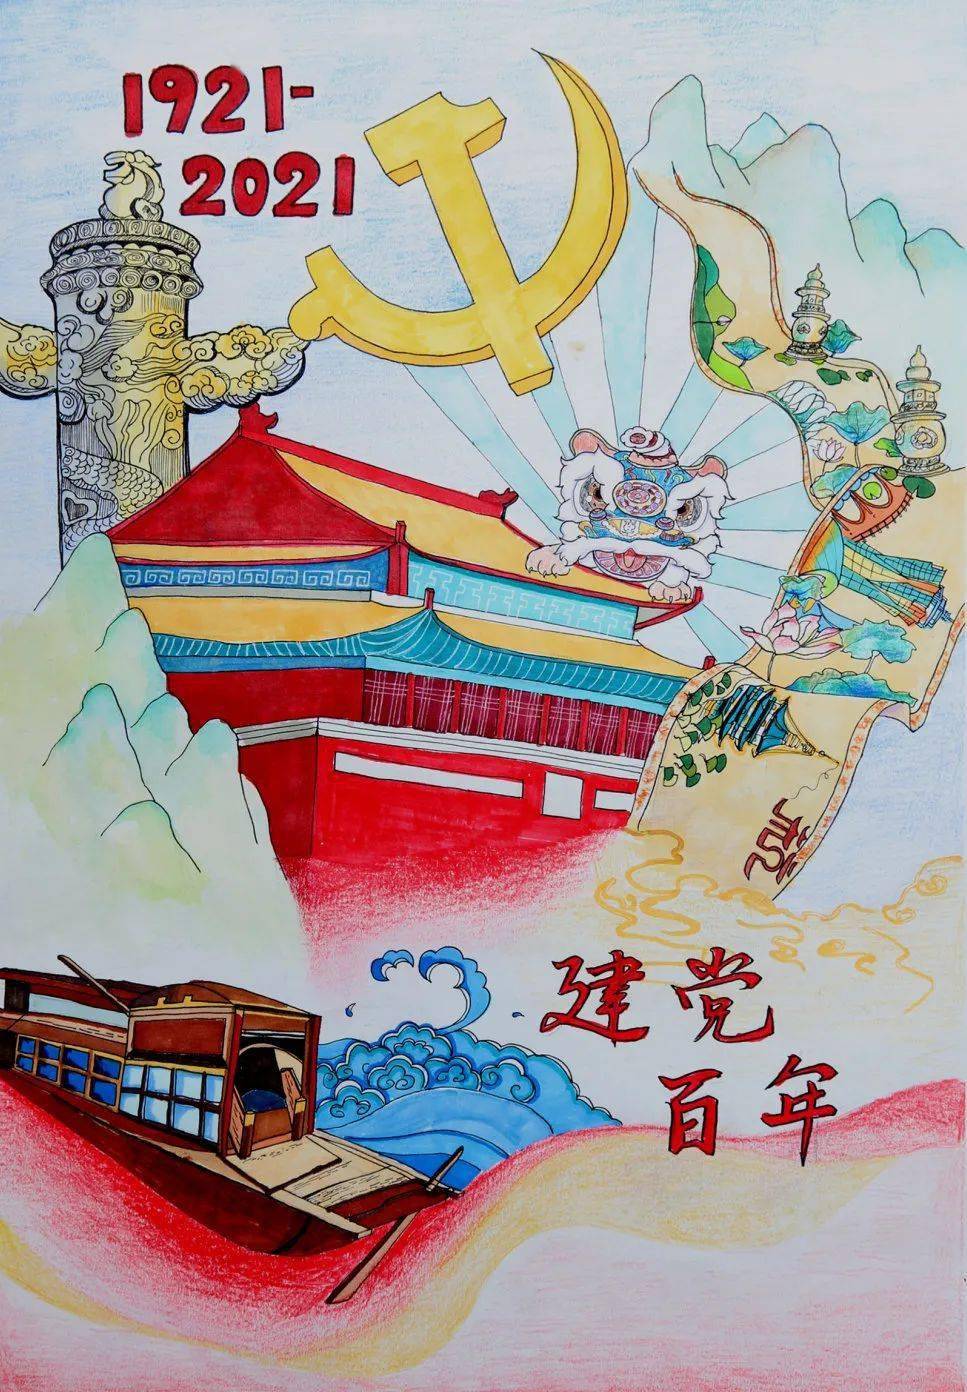 江山中学学生手绘"建党100周年"作品展!太惊艳了!